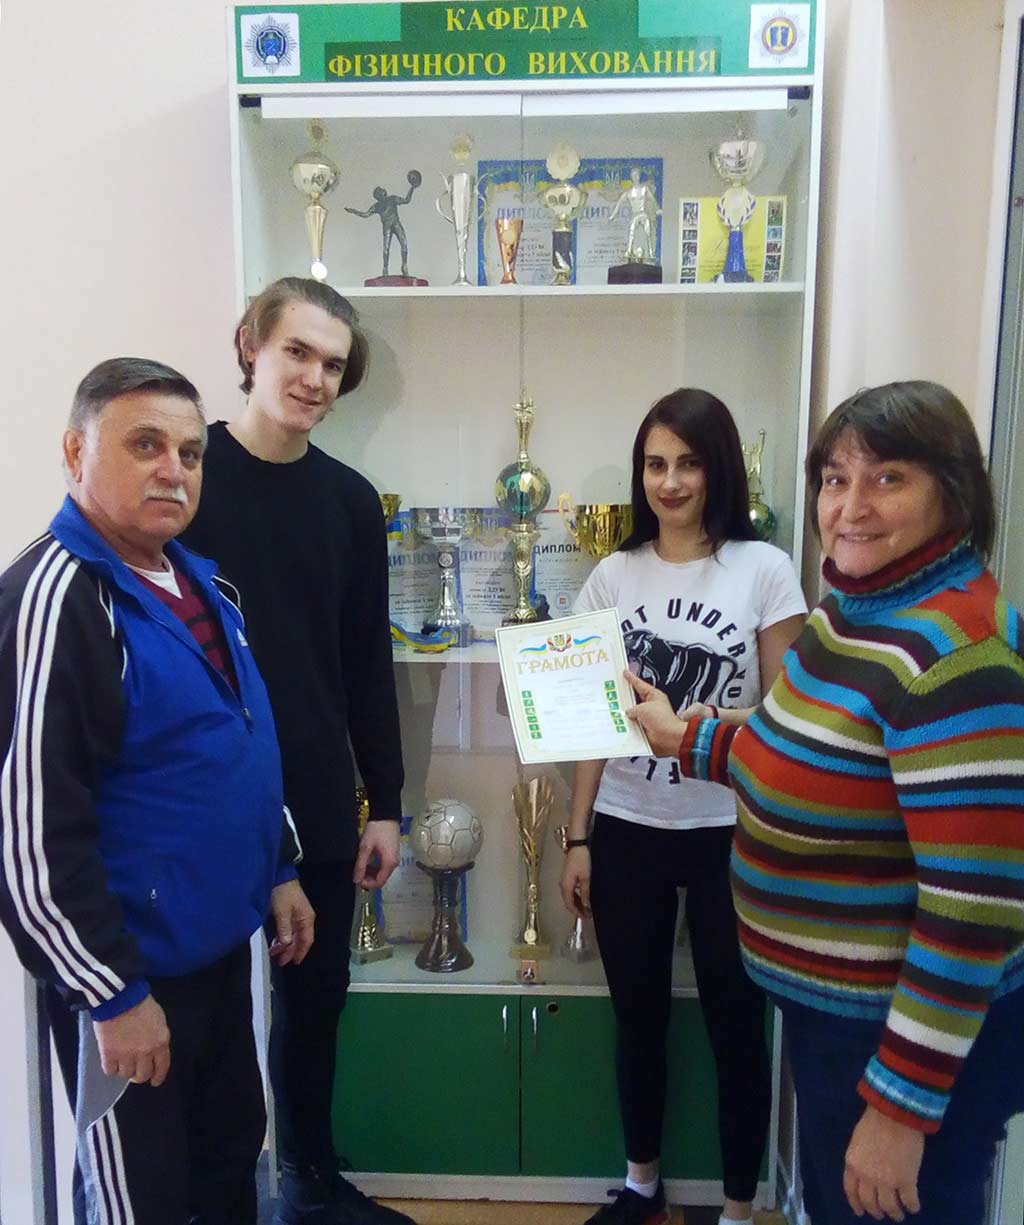 Упродовж 4-х днів у ДДУВС проходив чемпіонат із шашок серед 5-ти команд усіх факультетів.